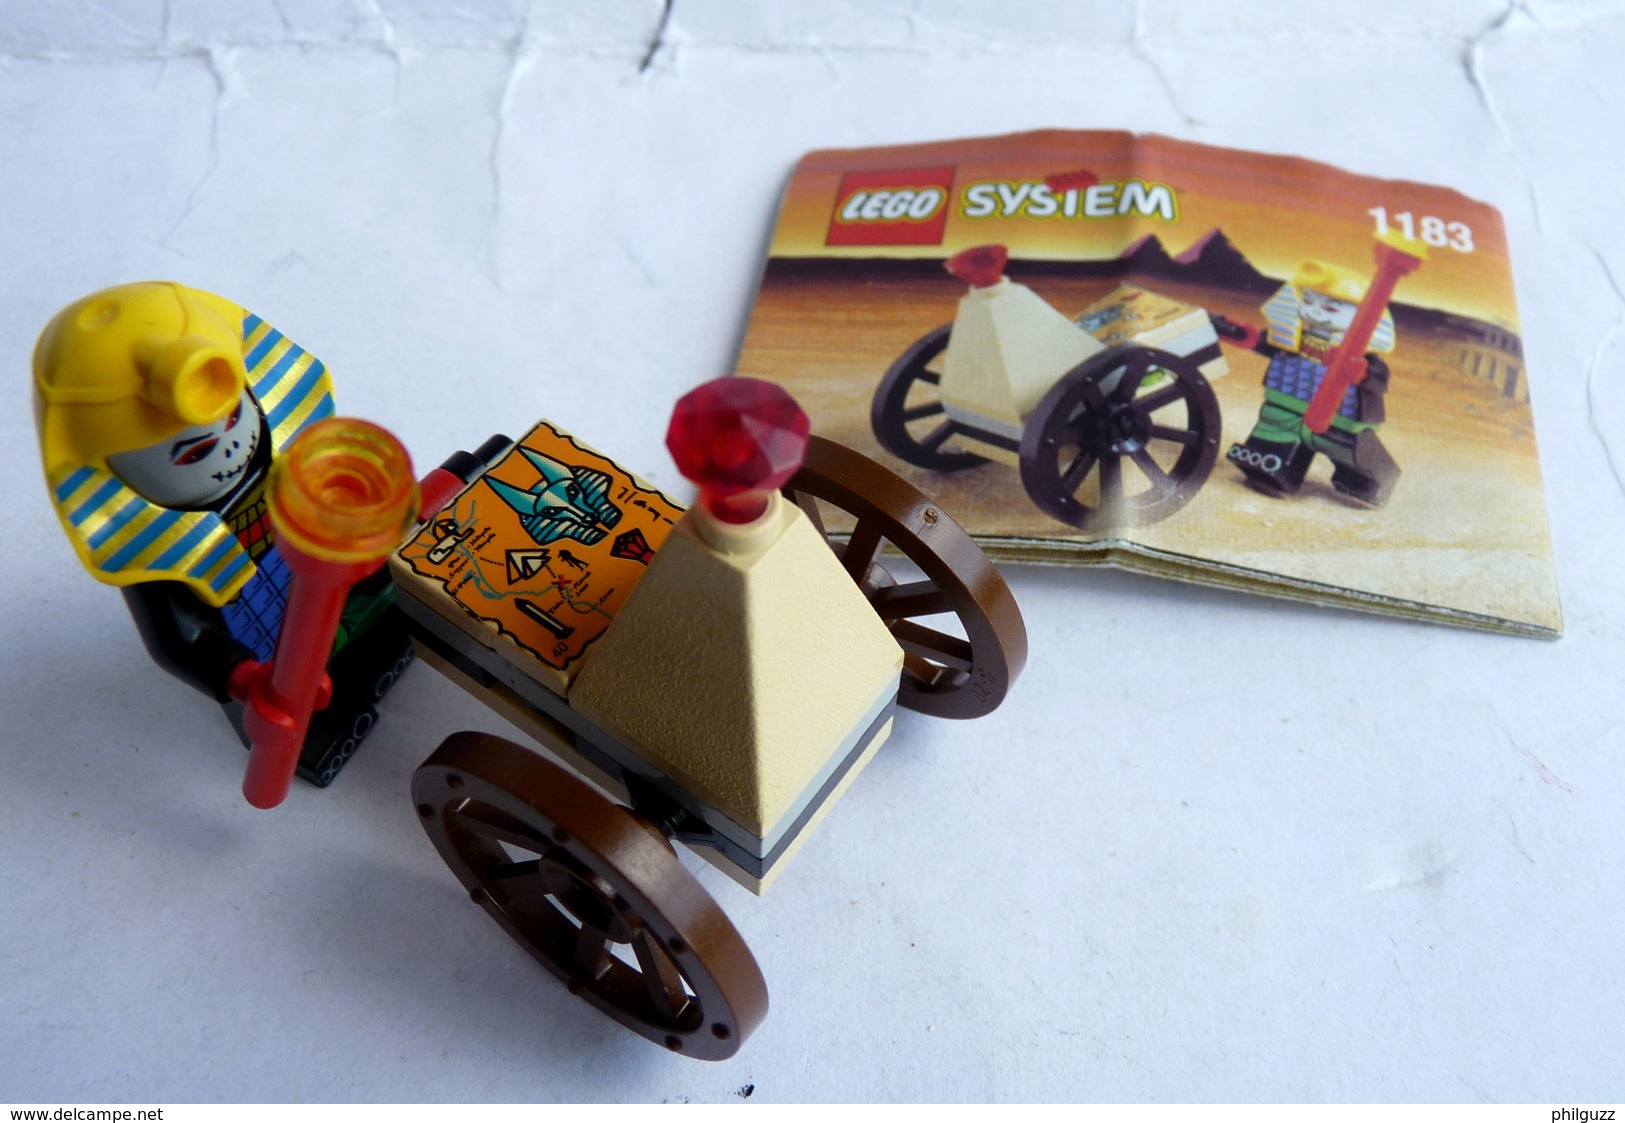 FIGURINE LEGO 1183 MUMMY AND CART Avec Notice 1999 - MINI FIGURE Légo - Lego System